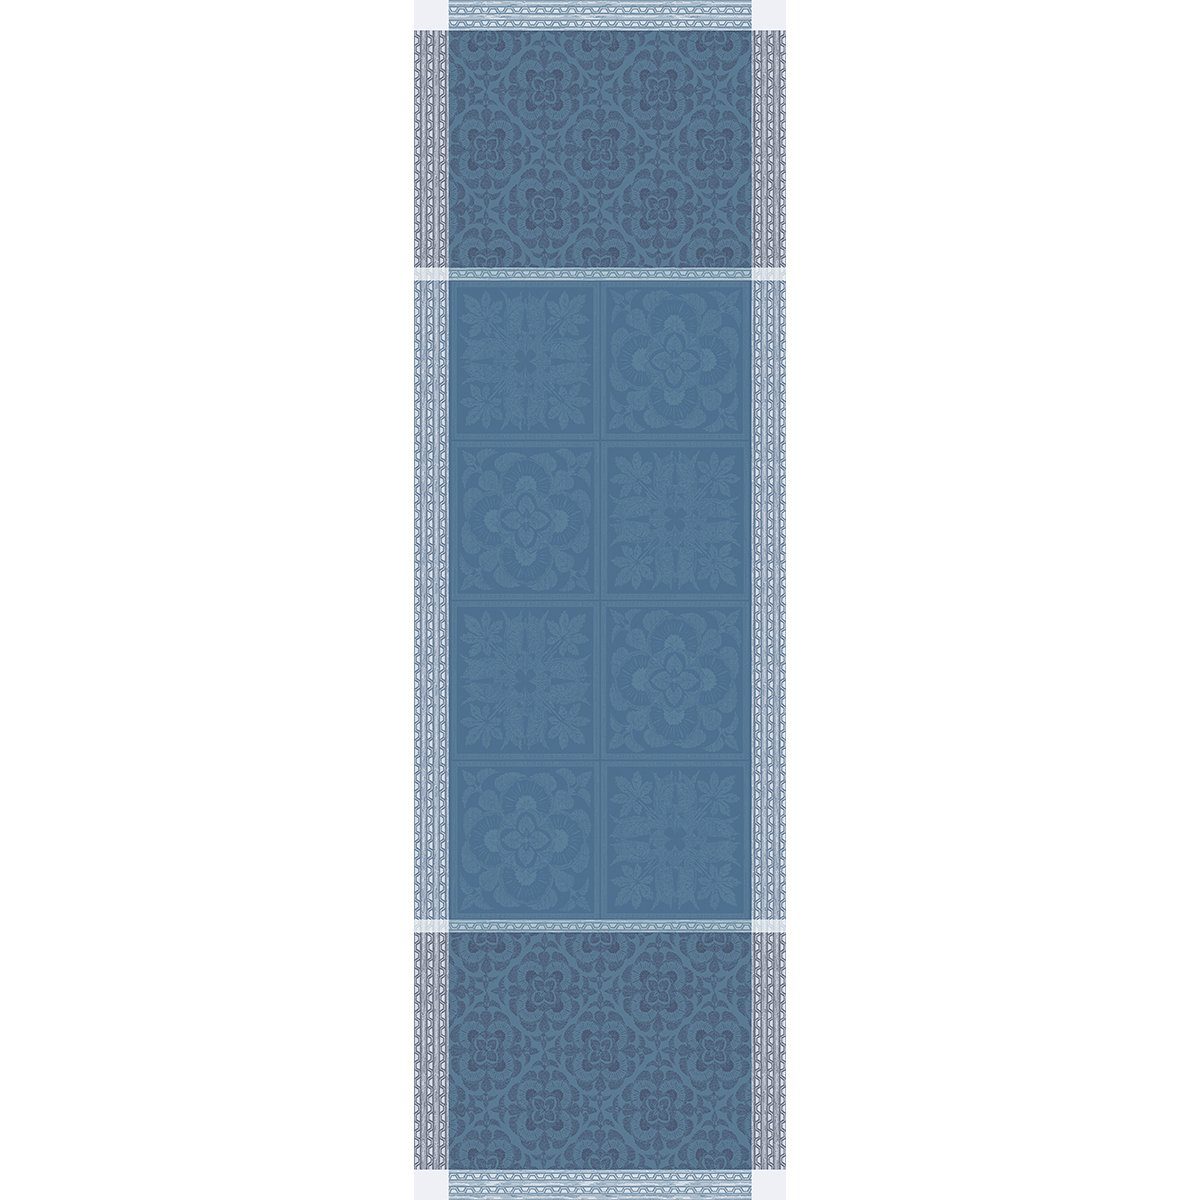 Garnier Thiebaut Tischläufer Tischläufer Harmonie Bleu 54x174 cm, jacquard-gewebt